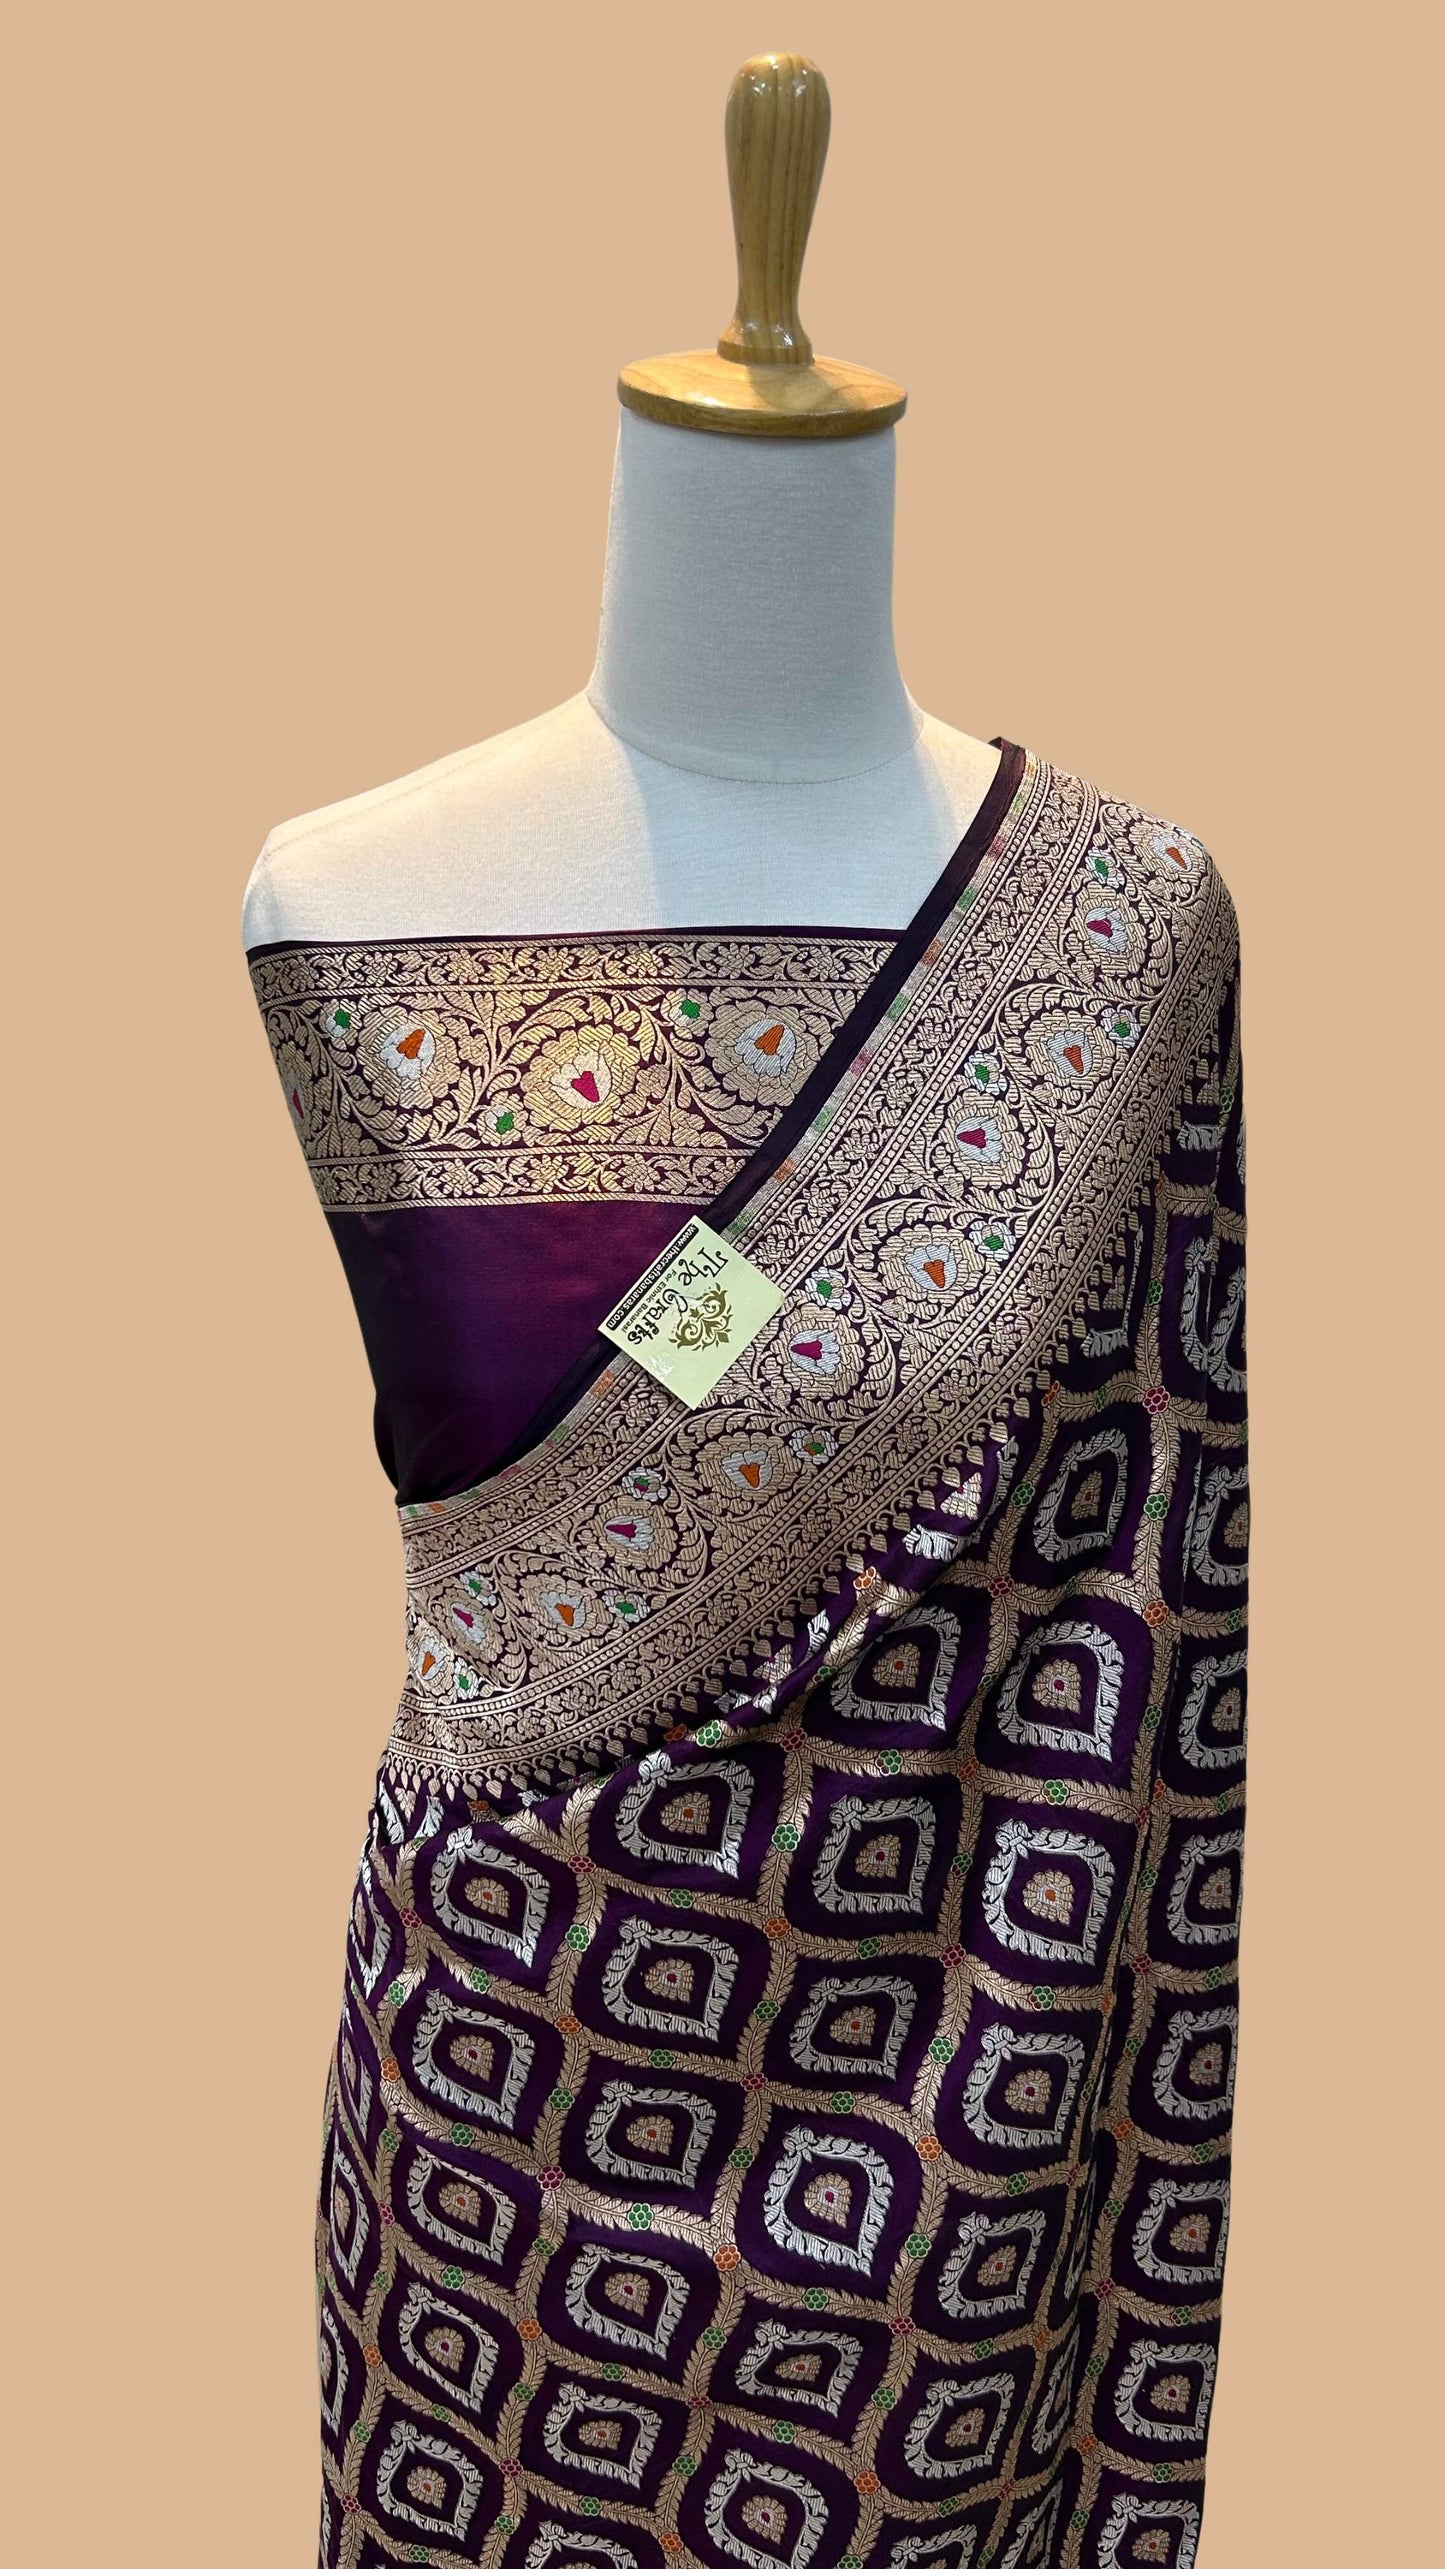 Pure Katan Silk Handloom Banarasi Saree - All over sona roopa jaal work with meenakari